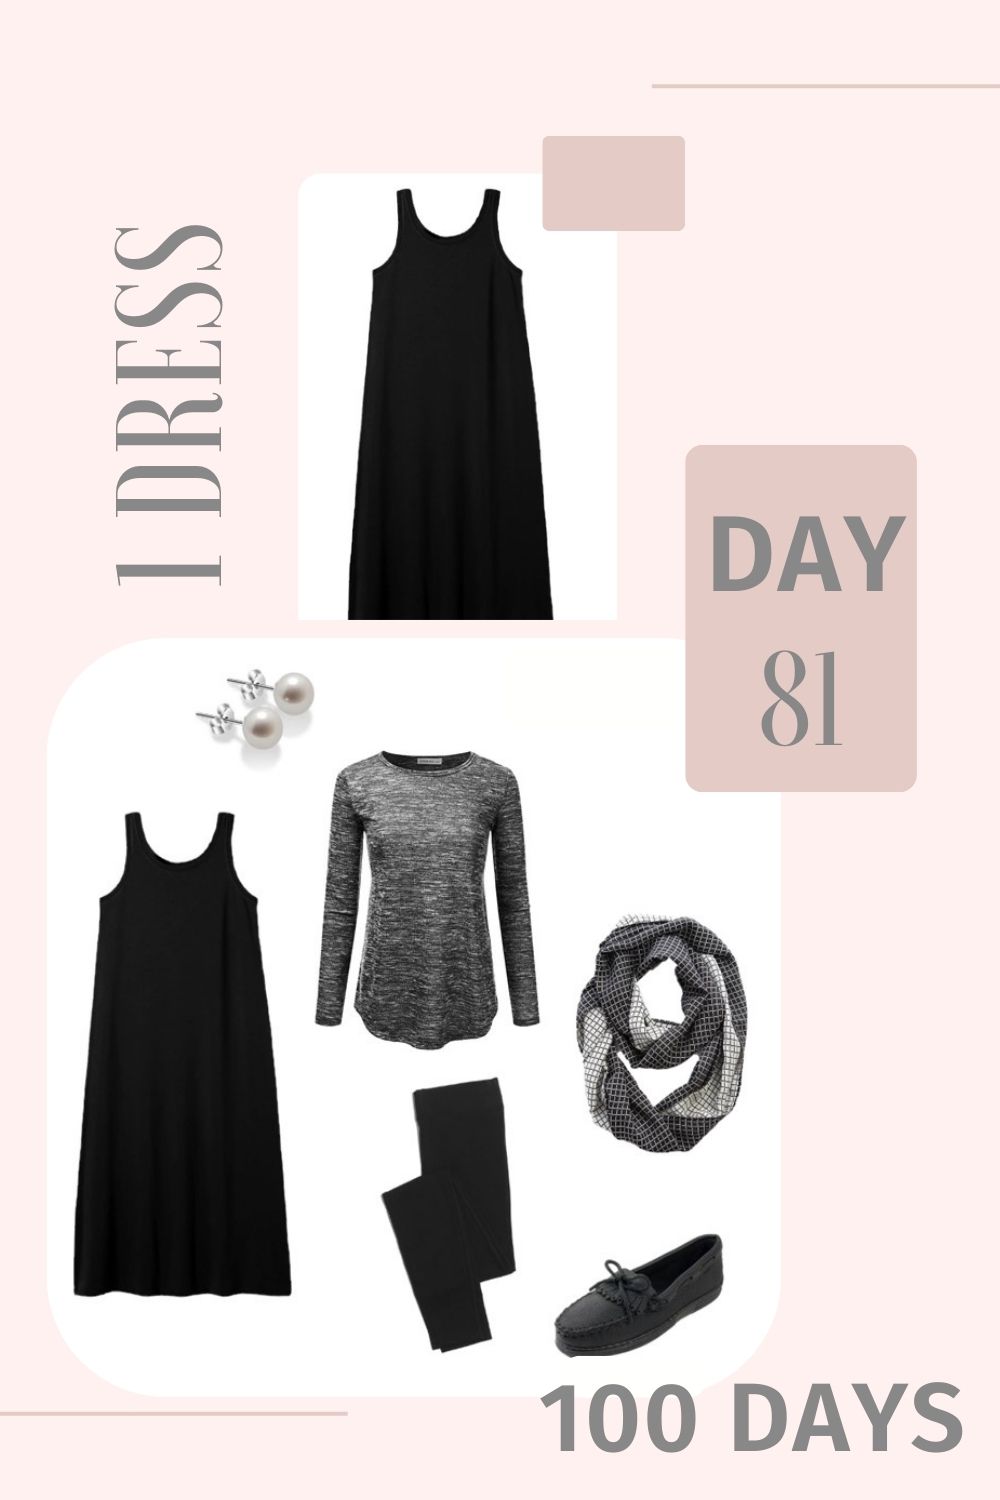 1 Dress 100 Days - Day 81